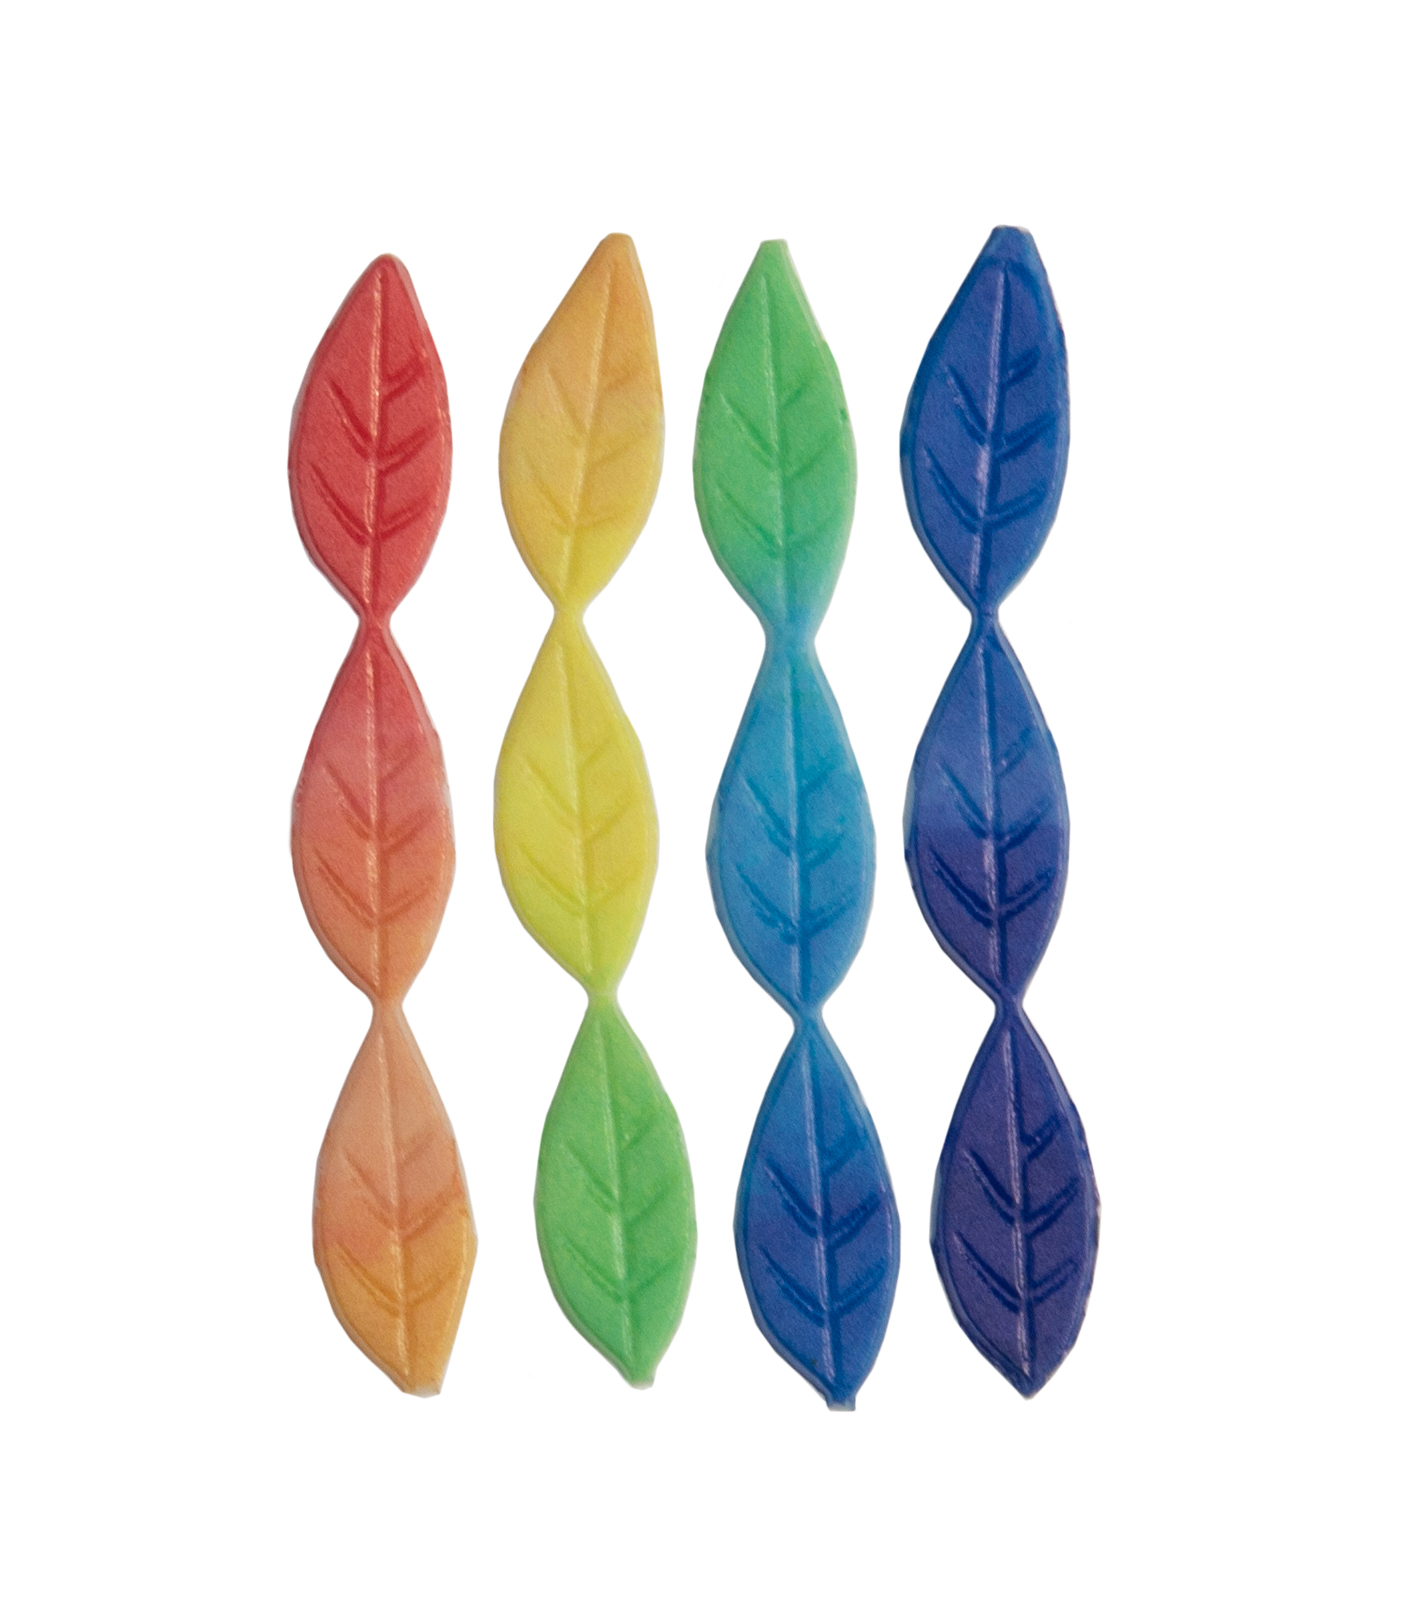 Wachsdekor Blätter regenbogenfarbig 20x8mm